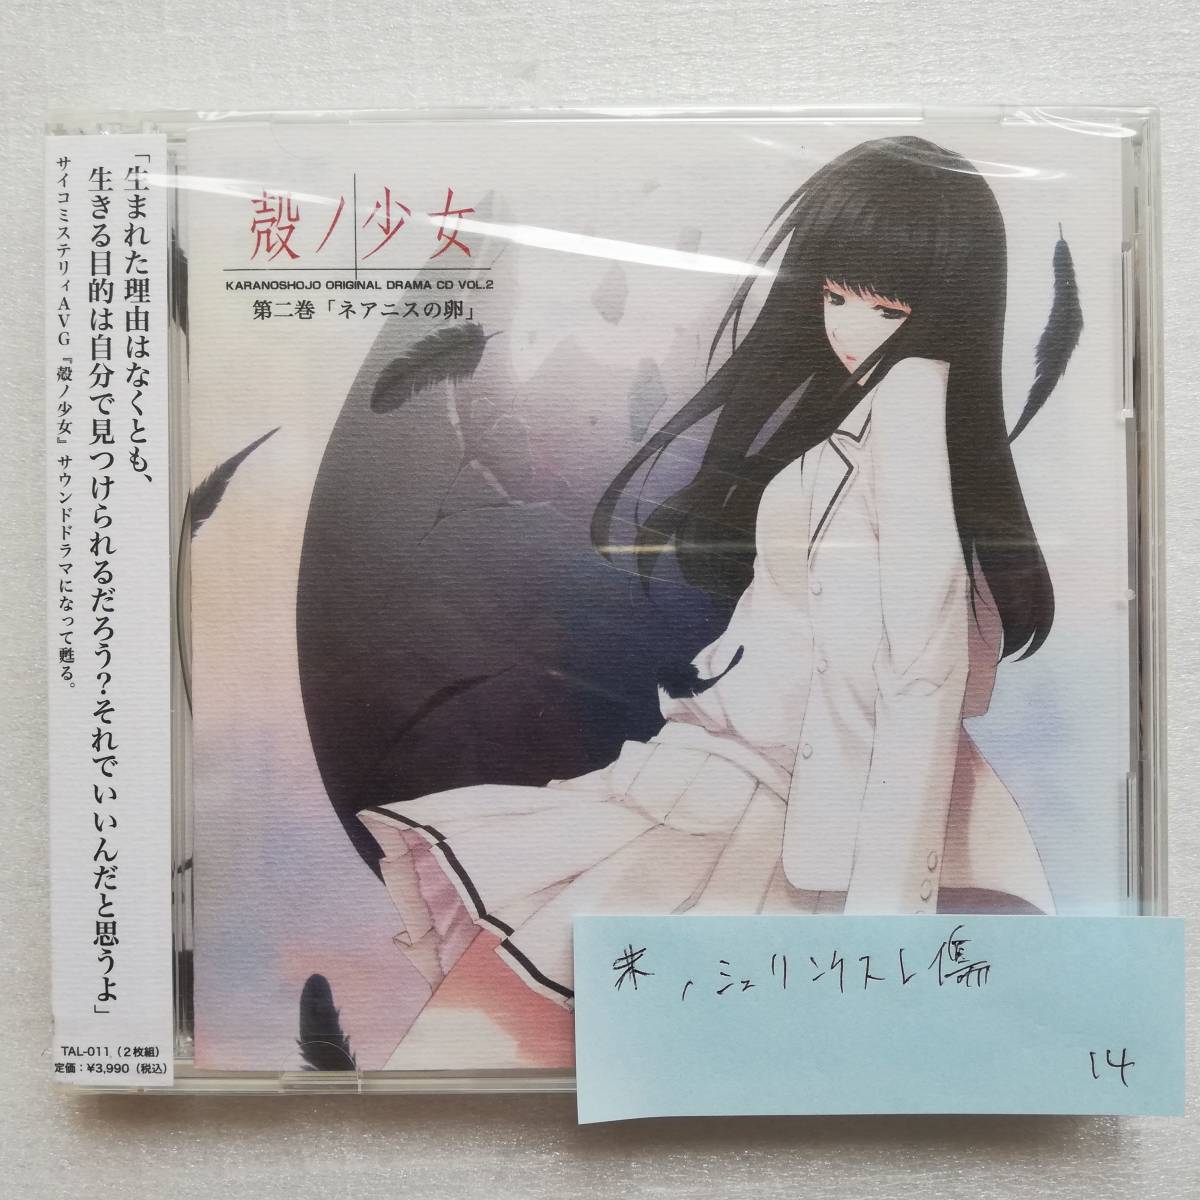 殻ノ少女 第二巻 ネアニスの卵 完全版 虚ノ少女 天ノ少女 - CD